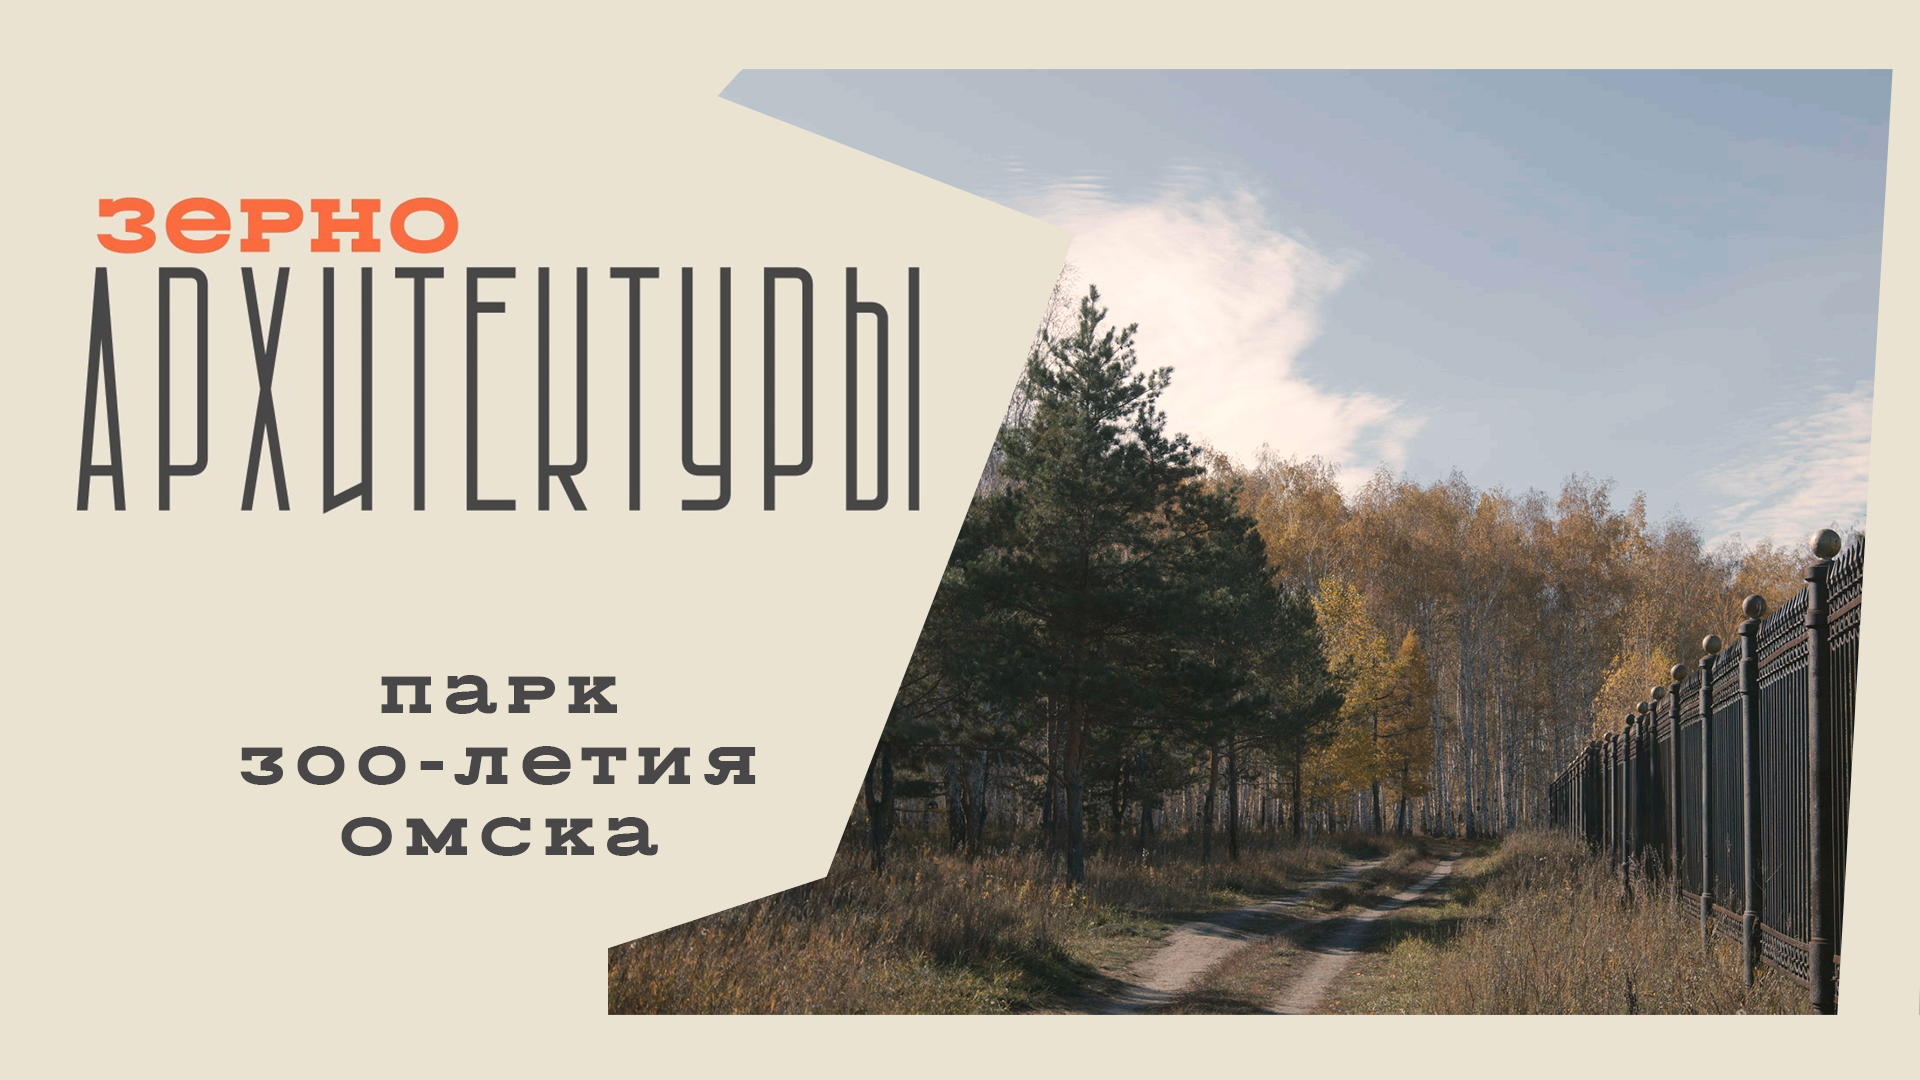 Парк 300-летия Омска | Видеоподкаст «Зерно архитектуры»